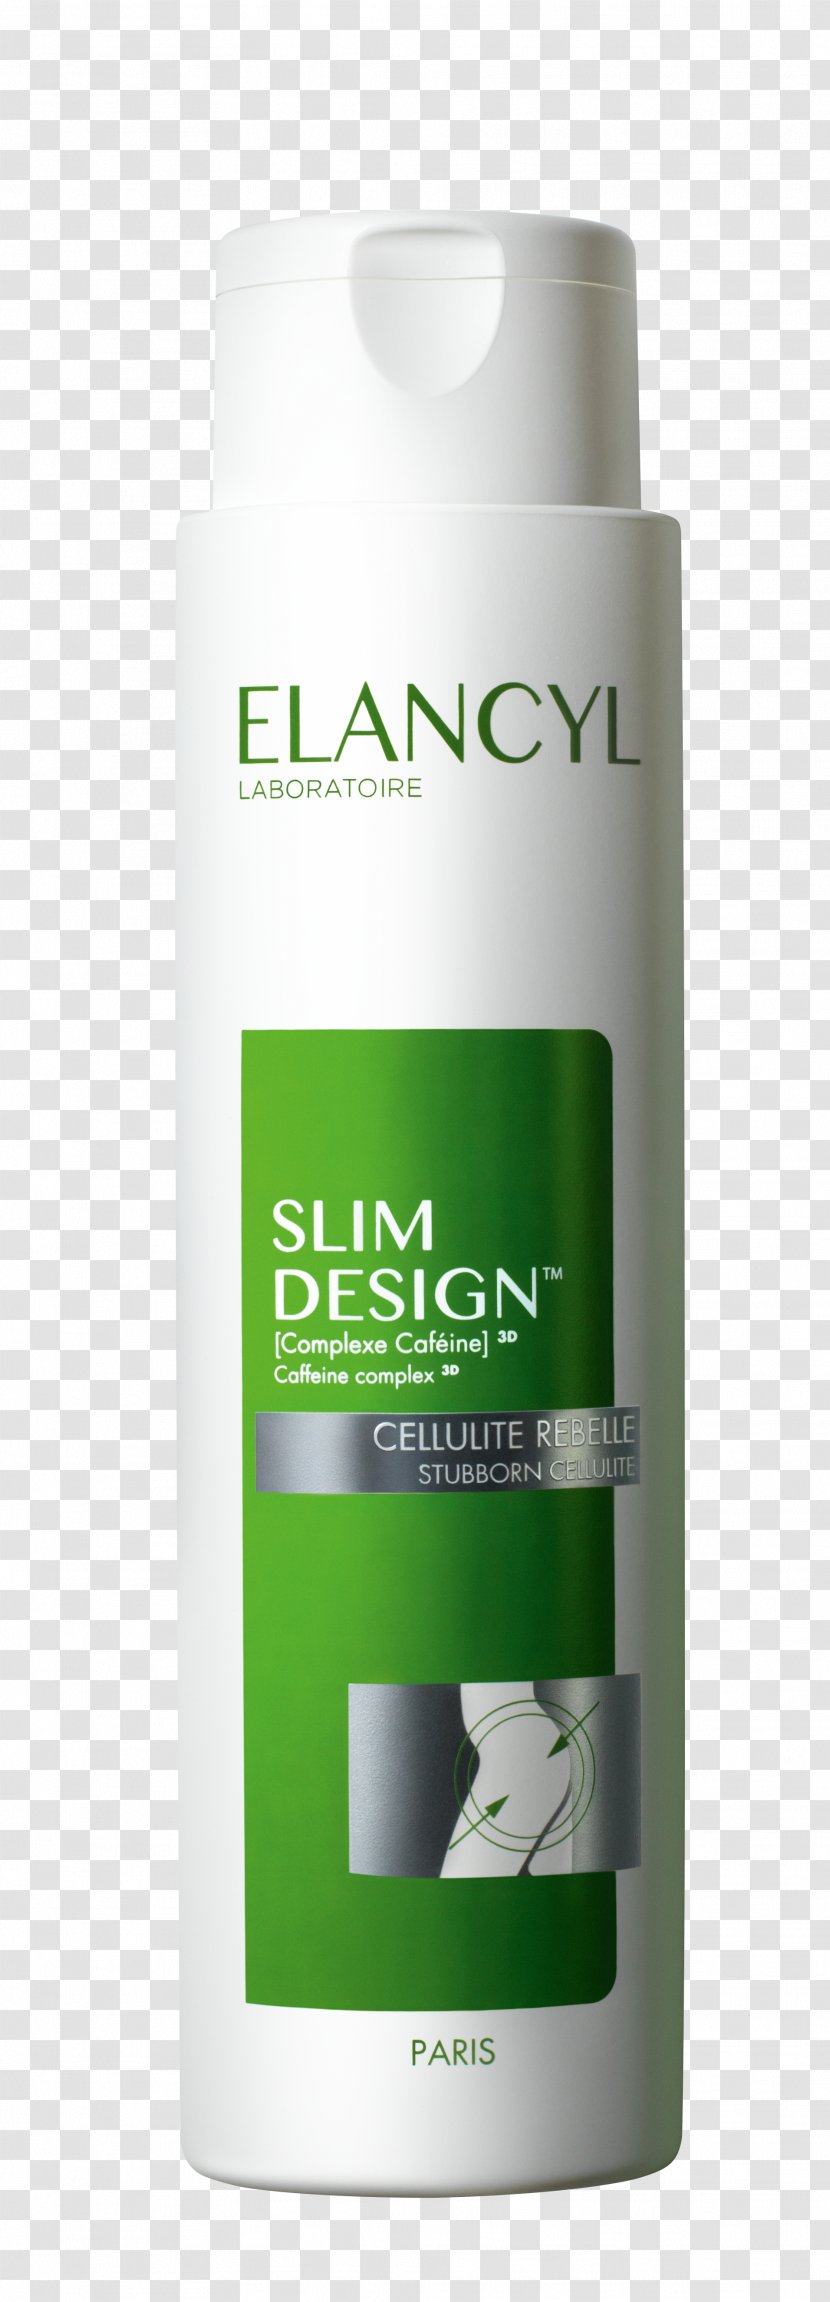 Elancyl Slim Design Soi Anti-cellulite Rebelle Milliliter Architecture Plan - Anticellulite - Liquid Transparent PNG